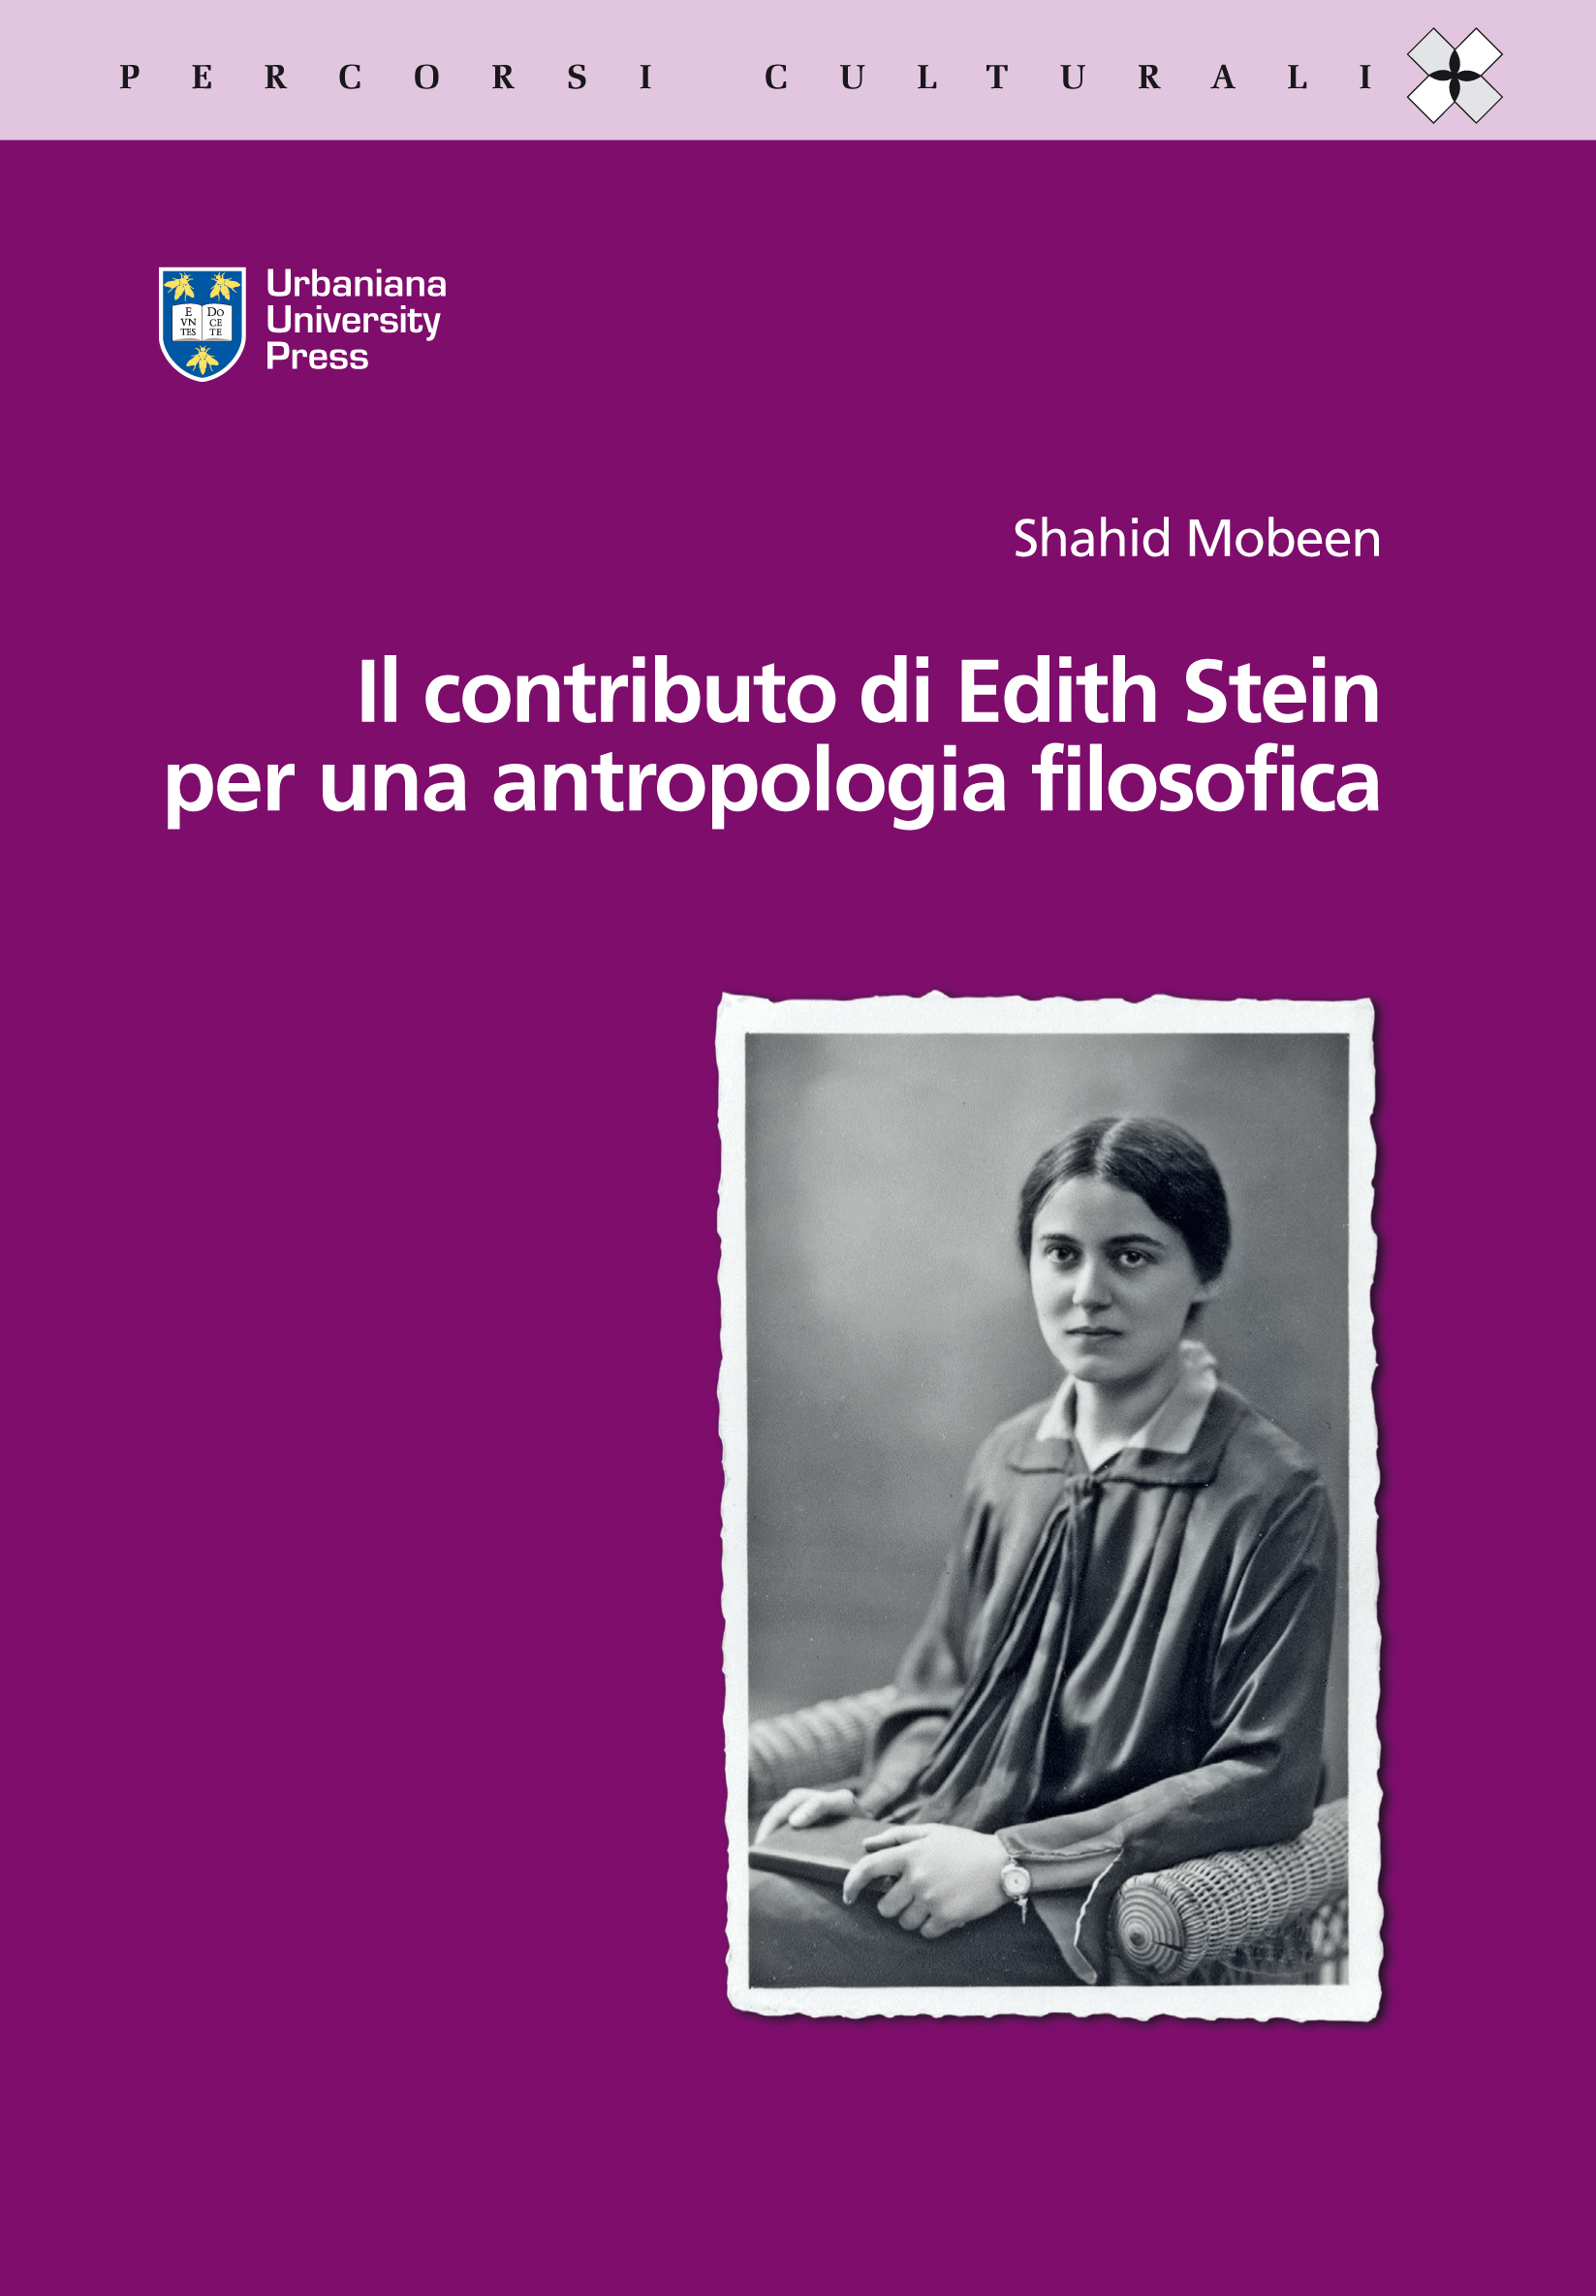 contributo-antropologia-filosofica-edith-stein-mobeen